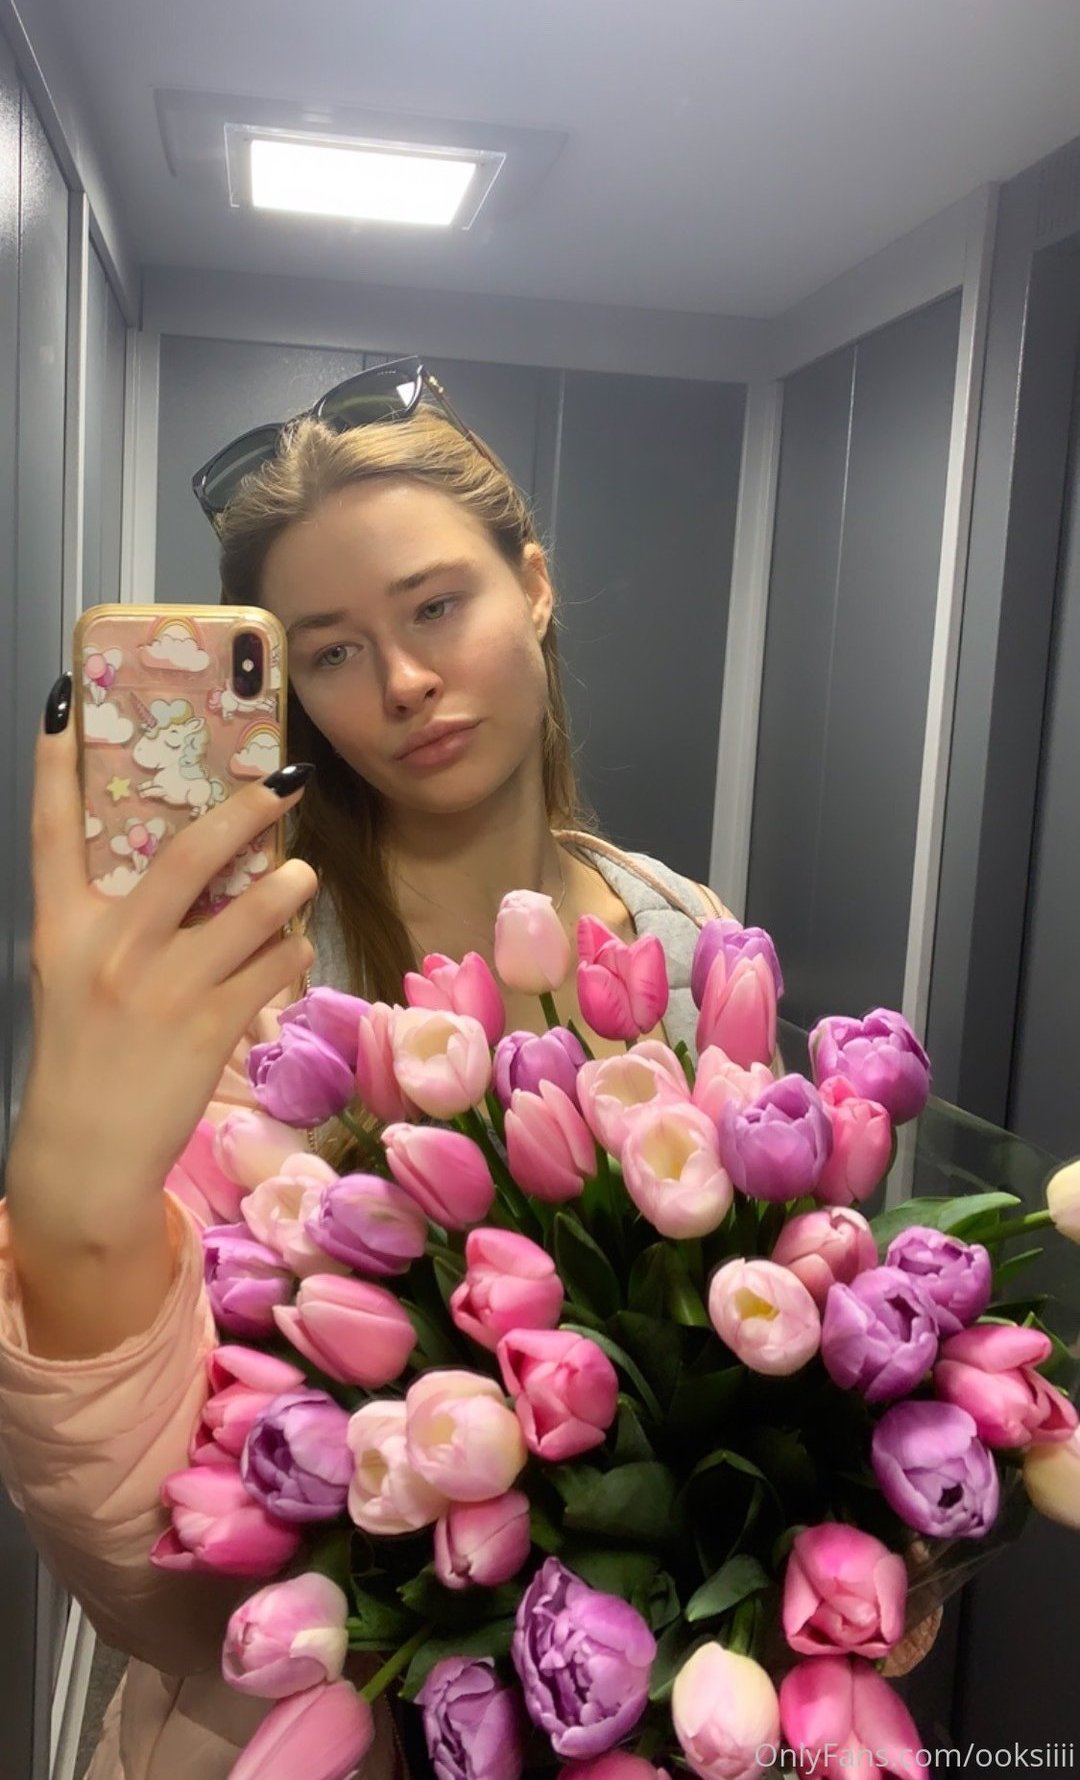 Oksana Fedorova Ooksiii OnlyFans Nude Leaks 0007